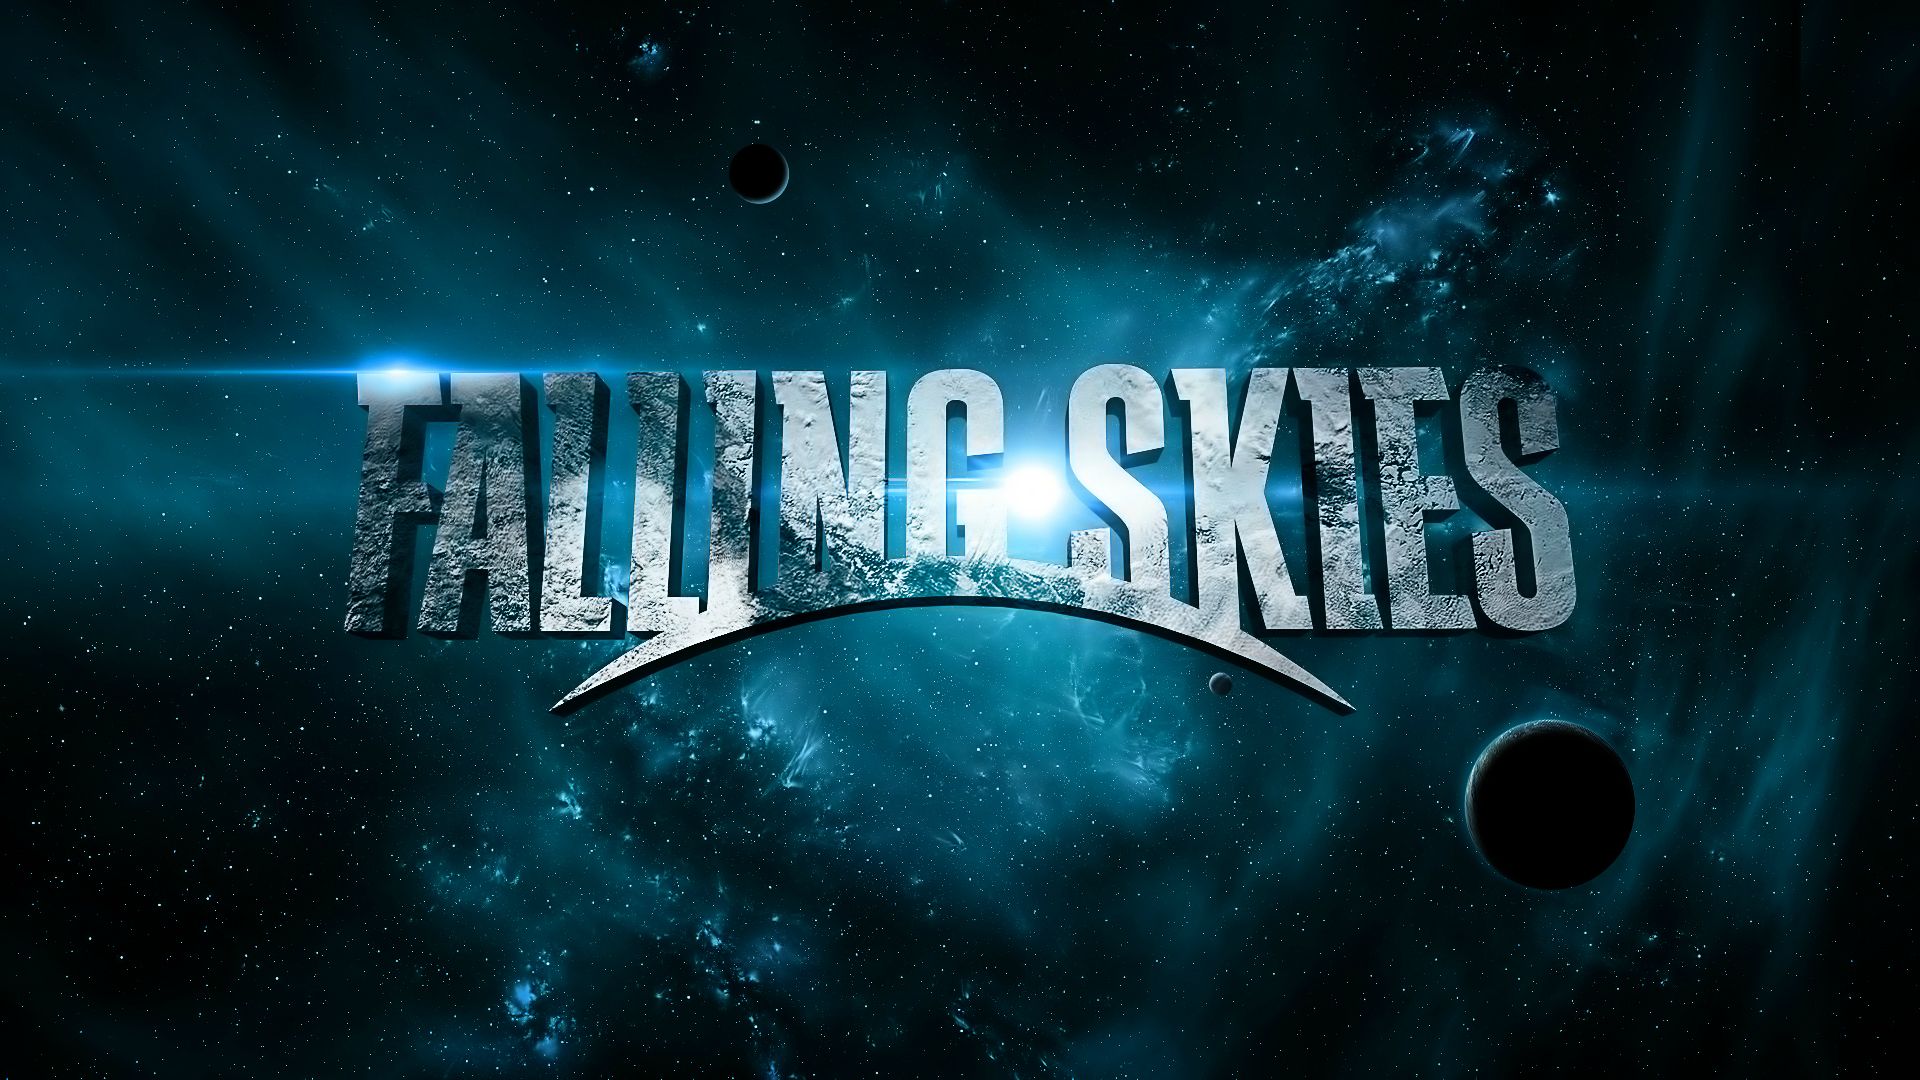 Descargar fondos de escritorio de Falling Skies HD